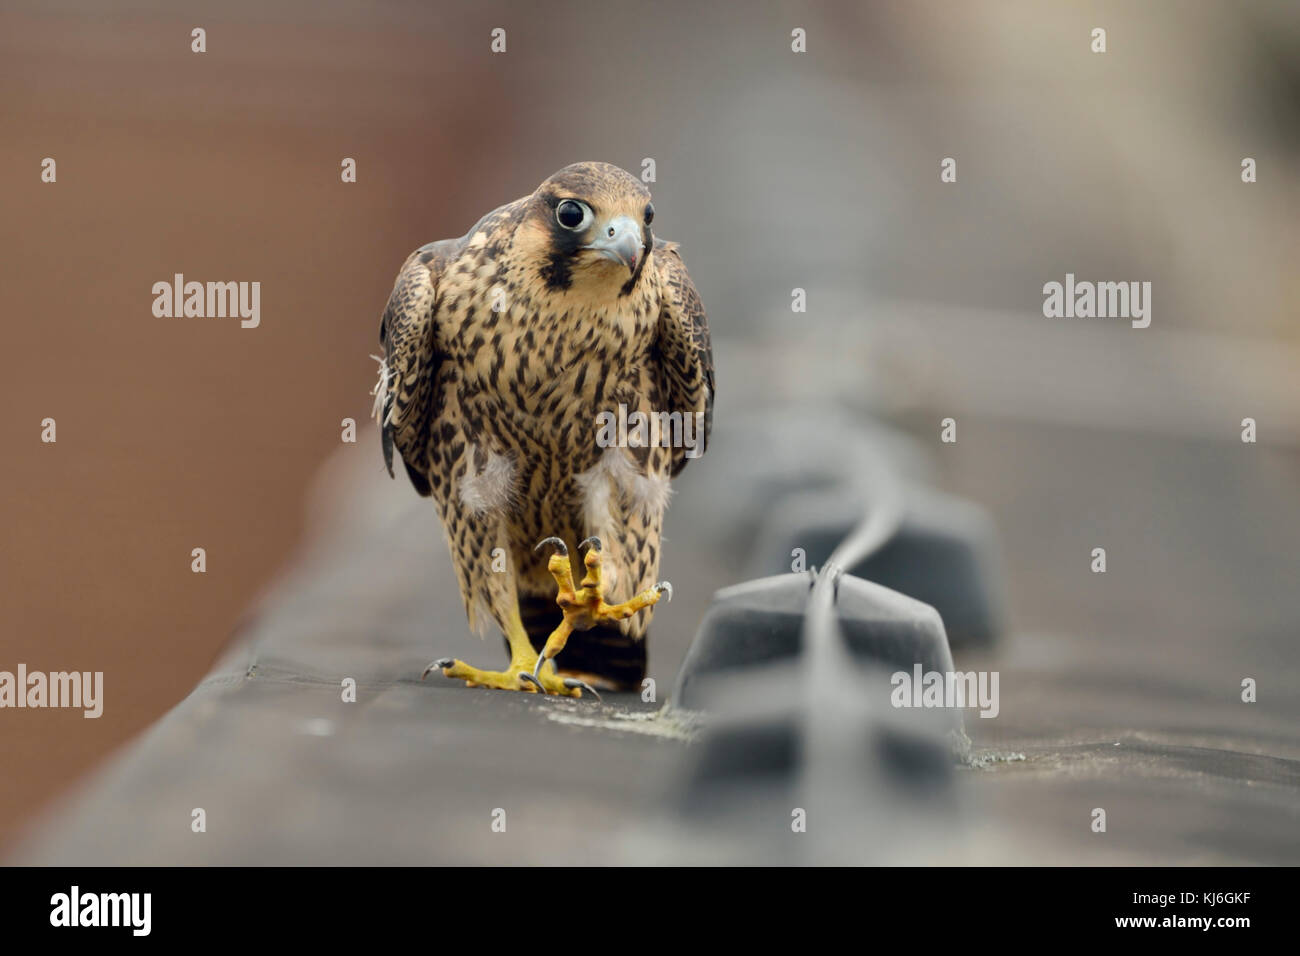 Faucon pèlerin ( Falco peregrinus ), jeune adolescent, marche à pied, en marchant le long d'une bordure de toit, regardant curieux, semble drôle, la faune, l'Europe. Banque D'Images